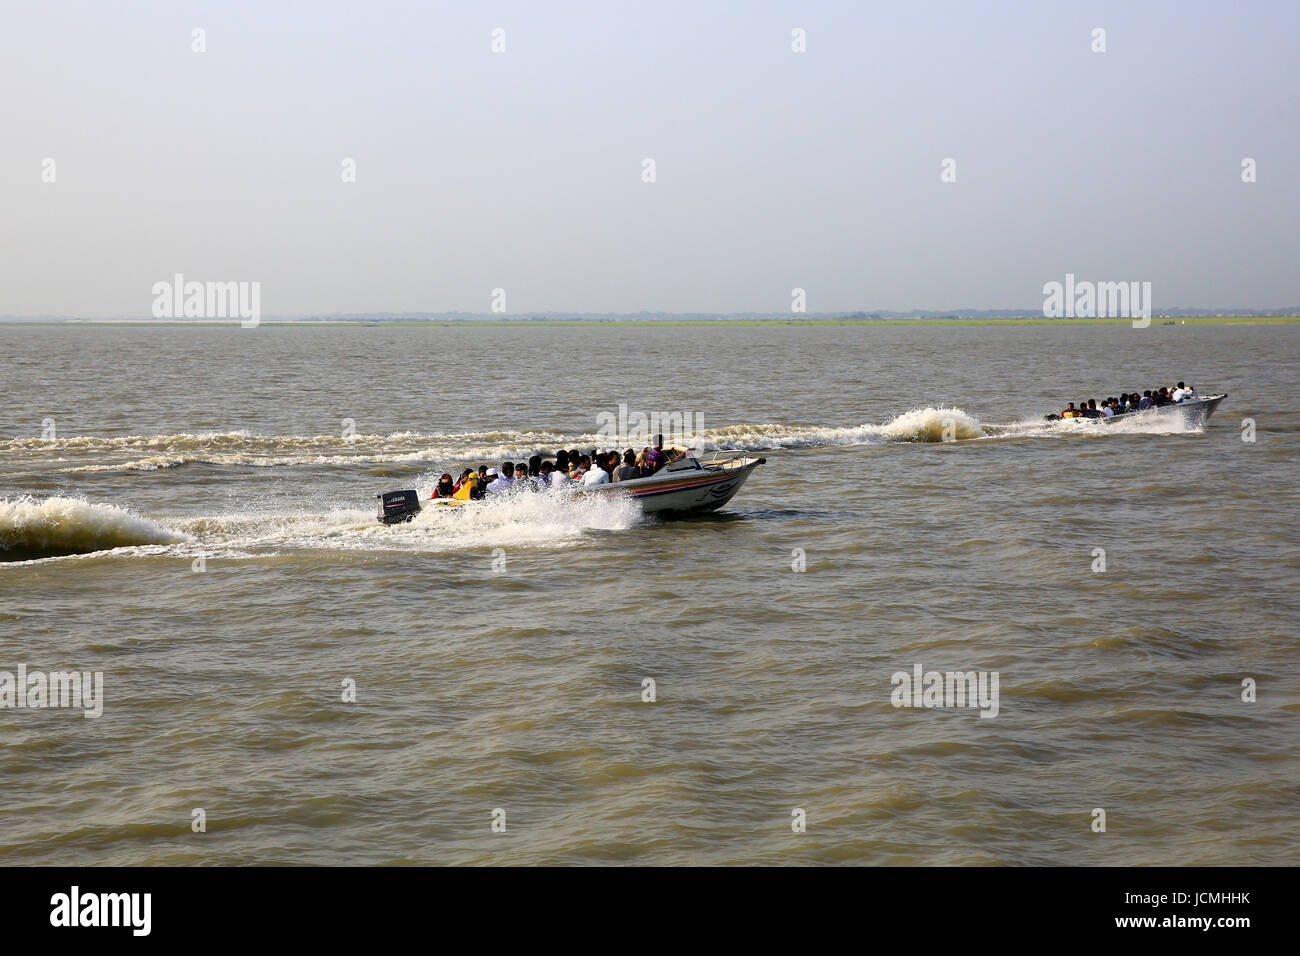 People cross the Padma River on speedboats on the Maowa-Kaorhakandi route without putting life jackets. Munshiganj, Bangladesh Stock Photo